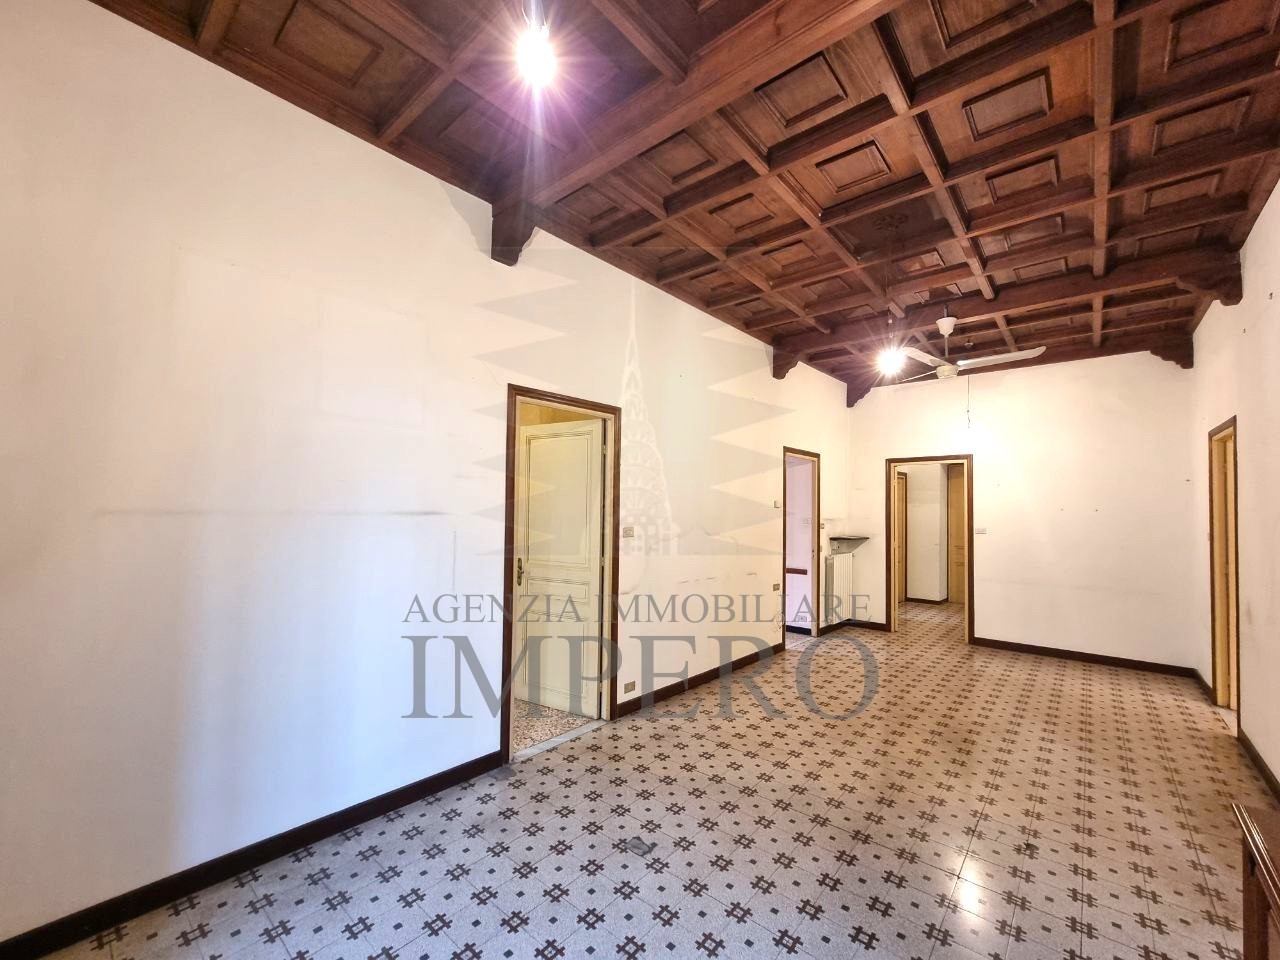 Appartamento in vendita a Ventimiglia, 7 locali, prezzo € 225.000 | PortaleAgenzieImmobiliari.it